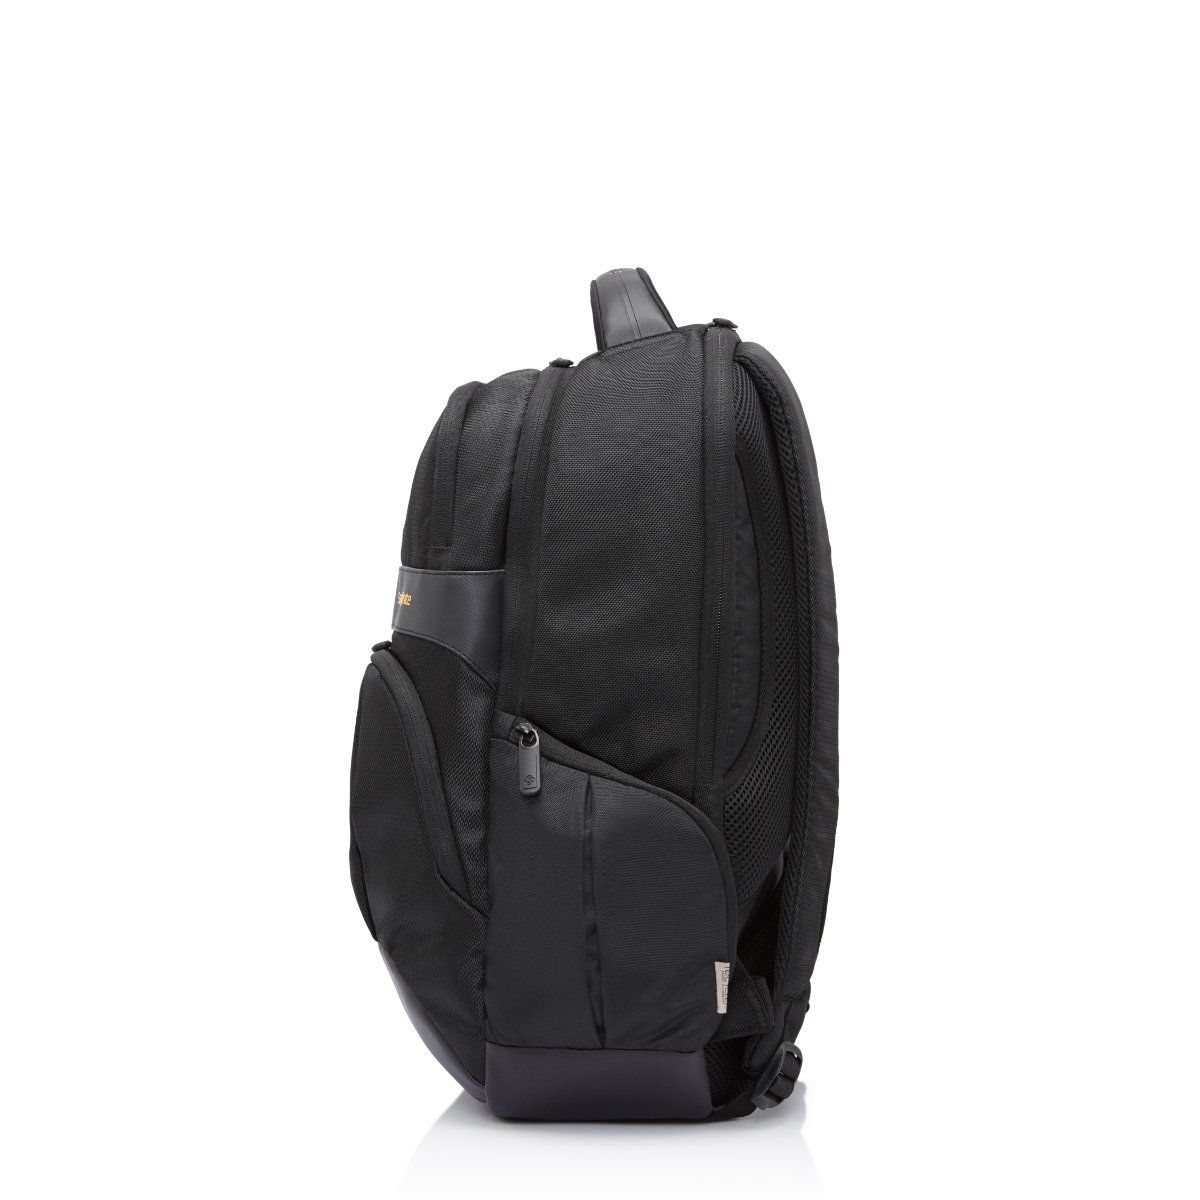 Buy Samsonite Laptop Backpack Office Bag | Travel Backpack For Men ...